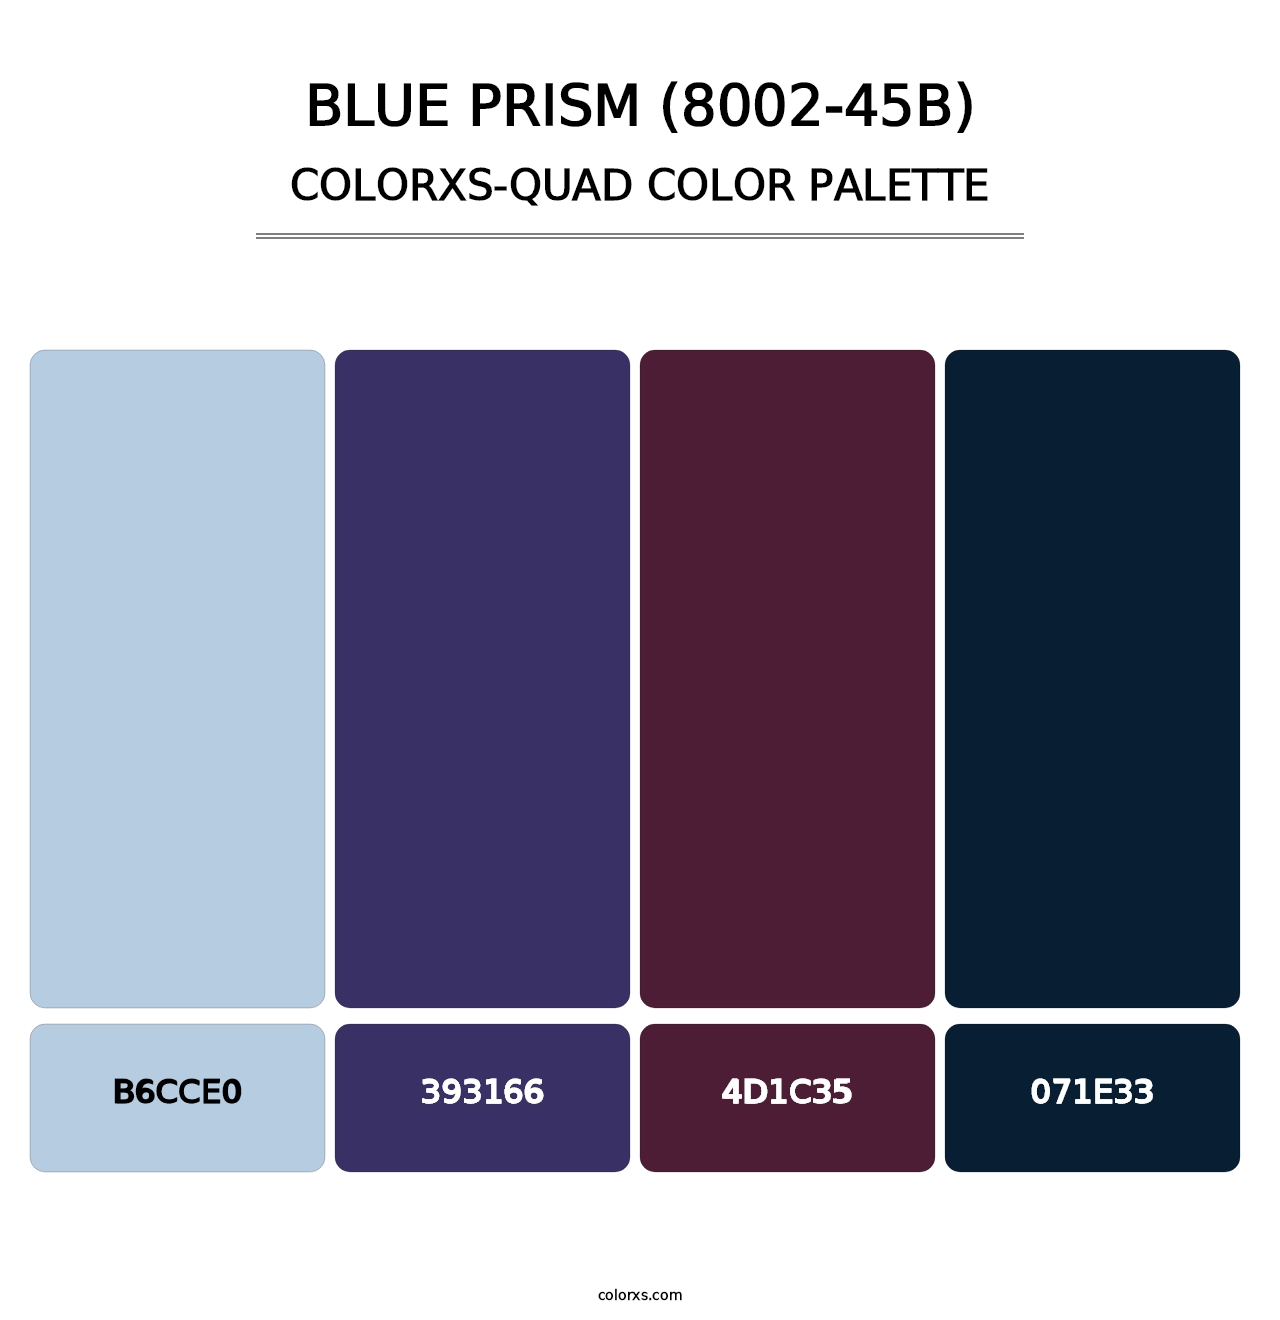 Blue Prism (8002-45B) - Colorxs Quad Palette